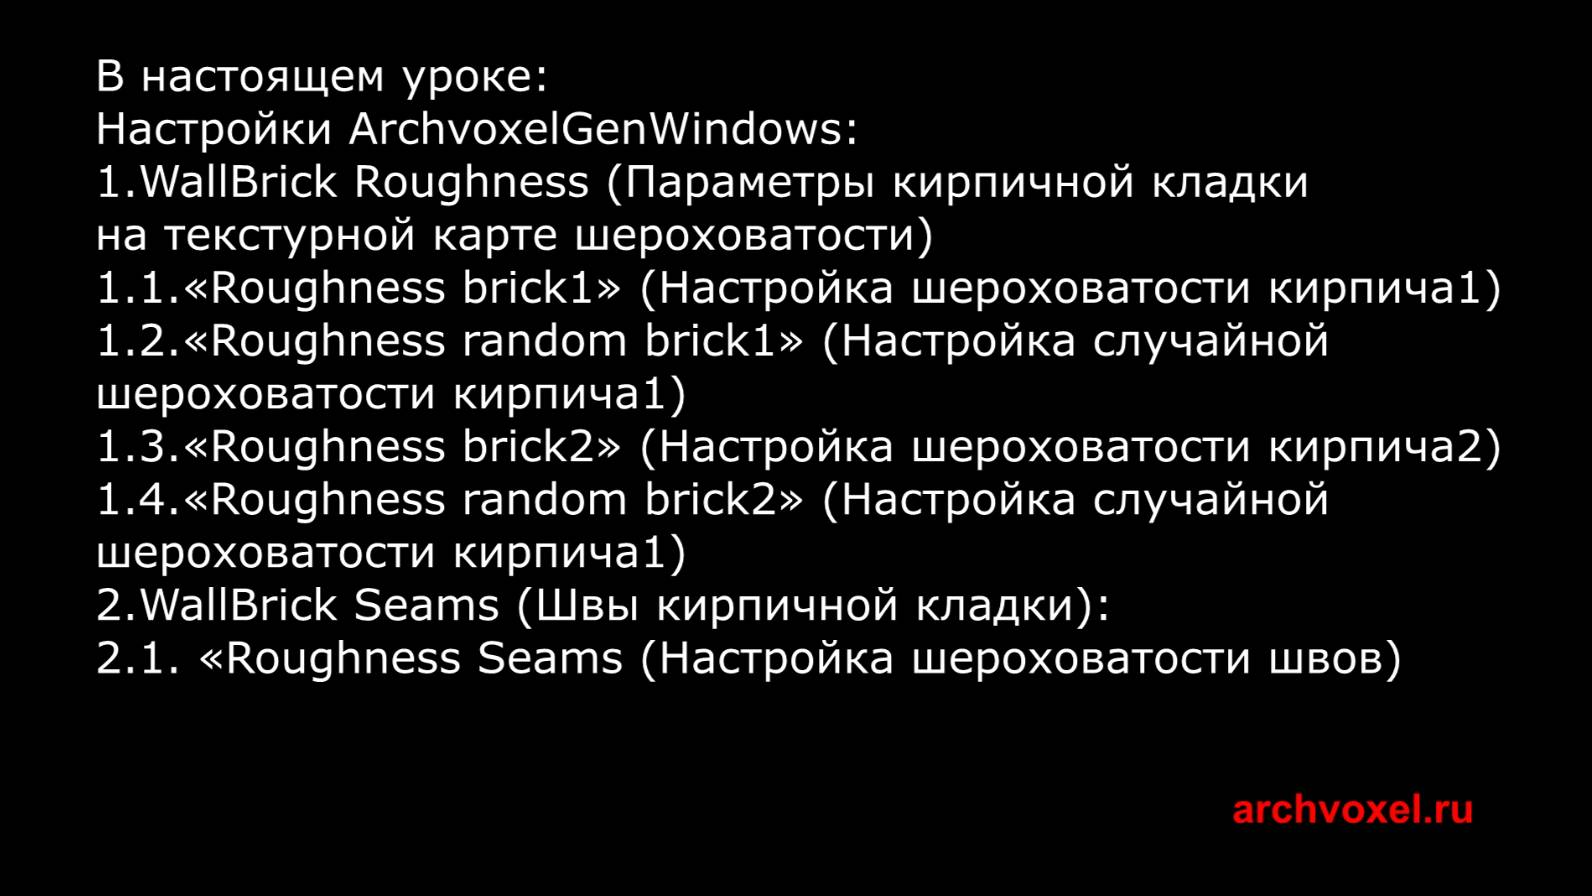 Уроки Archvoxel.ru ArchvoxelGenWindows в Substance Player: Параметры шероховатости кирпичной стены.